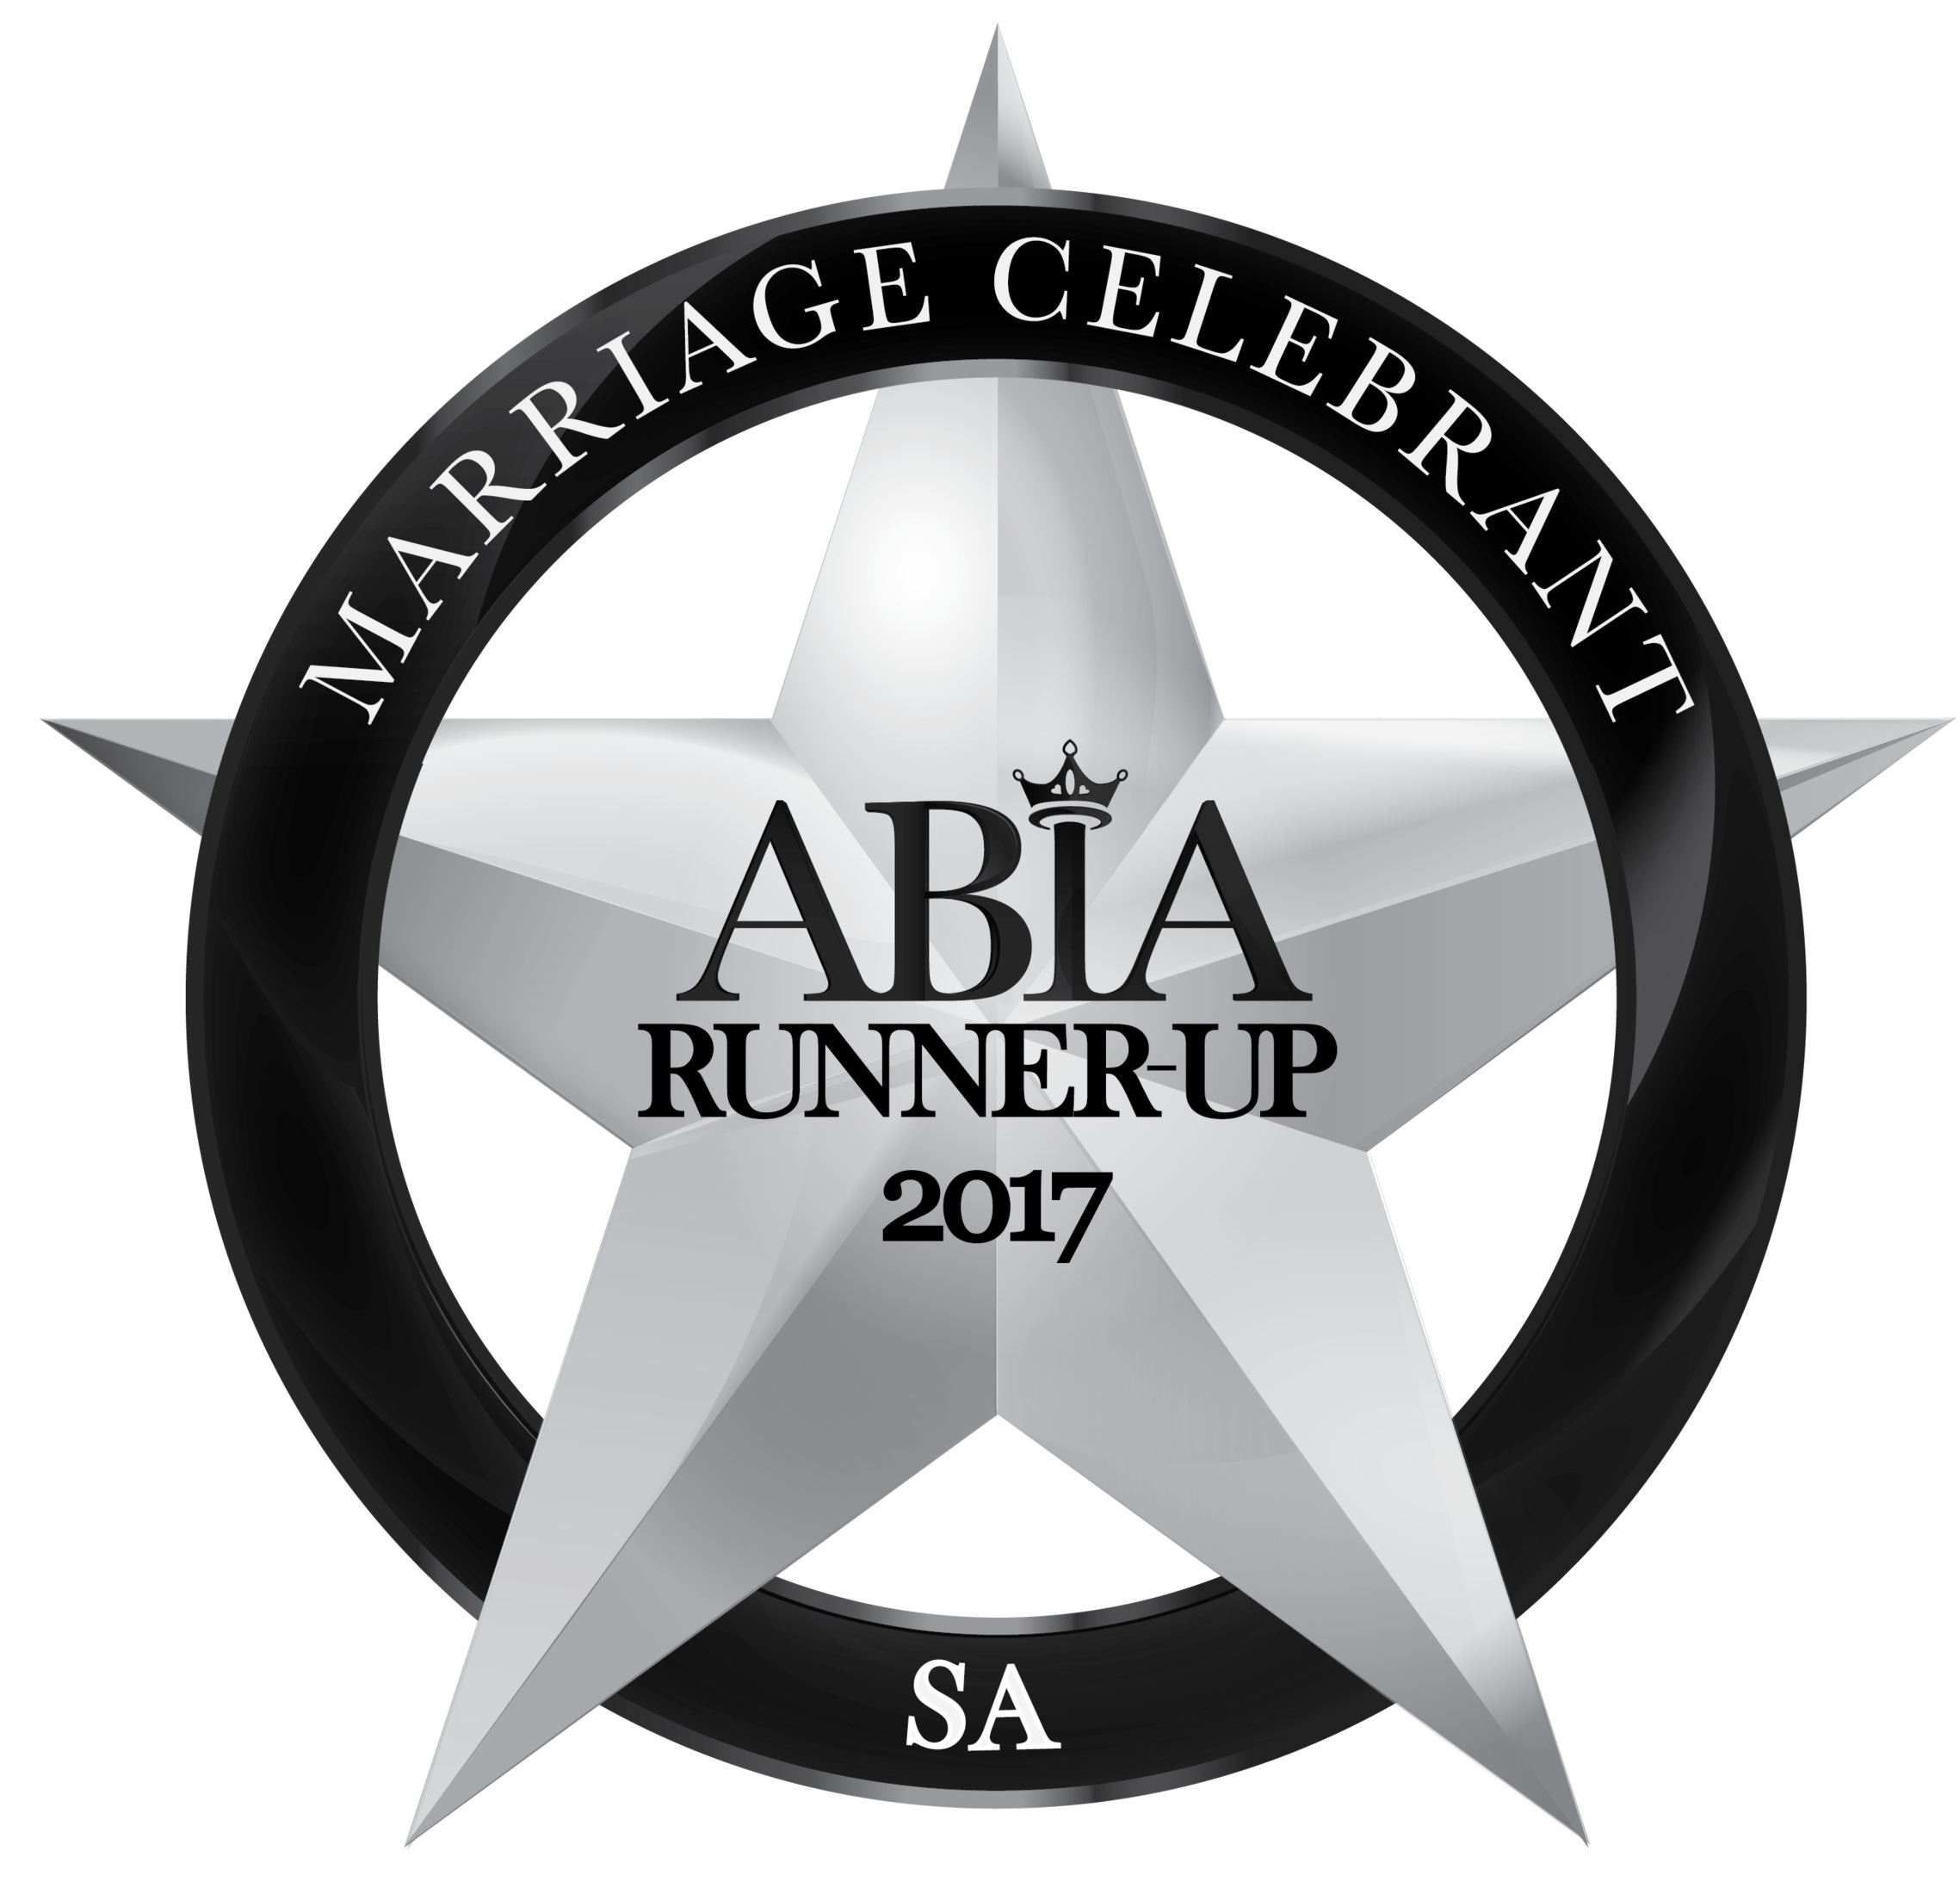 Camille Abbott Marriage Celebrant 2017 Runner up ABIA Awards